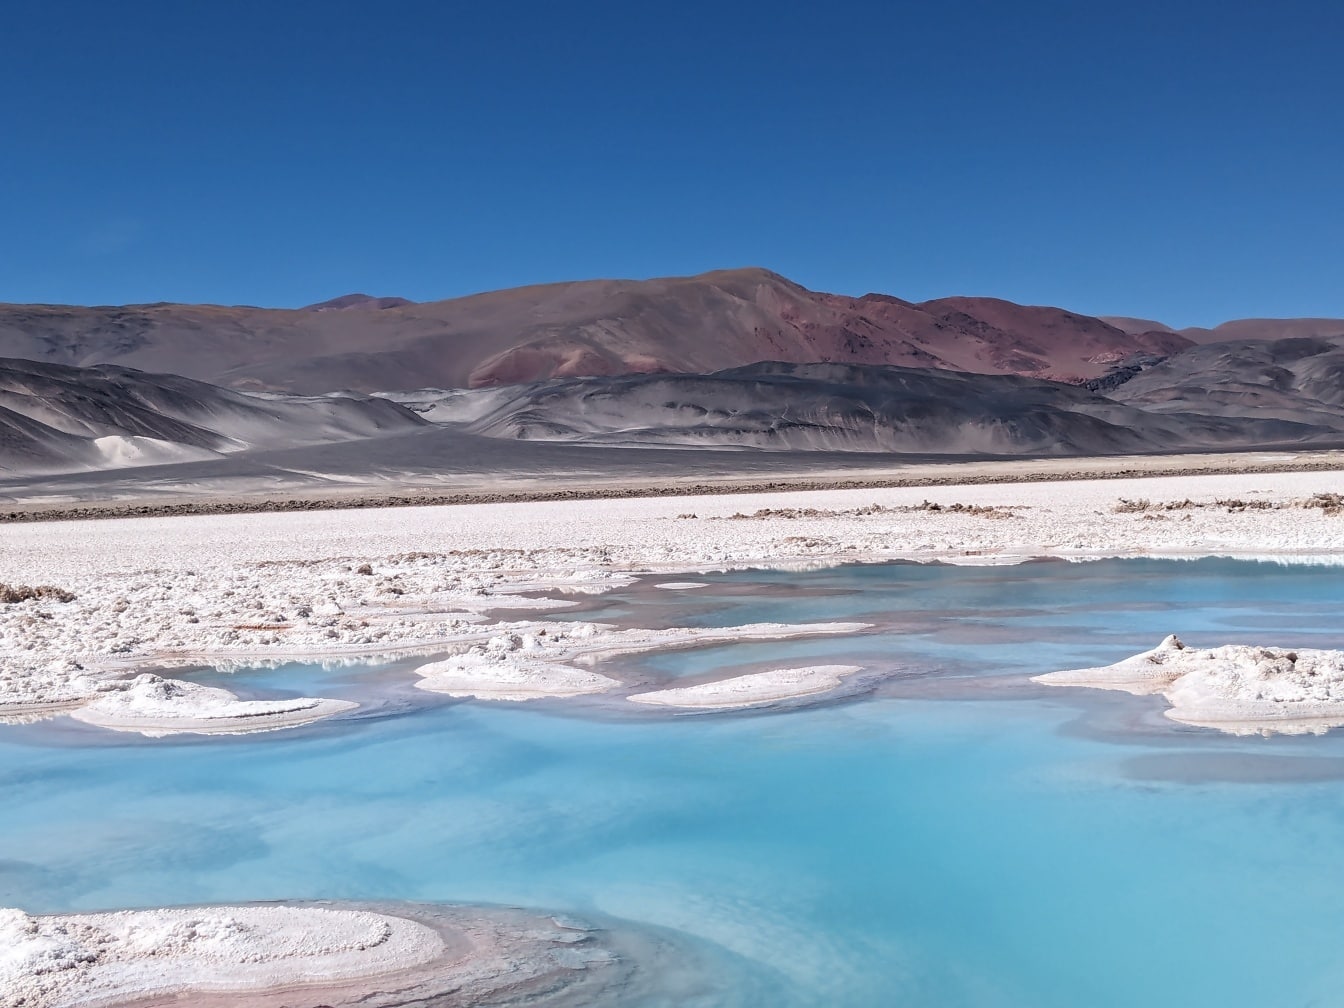 Ốc đảo muối tại cao nguyên muối ở Salar de Antofalla trong sa mạc Catamarca ở dãy núi Andes với các mỏ muối trên mặt đất